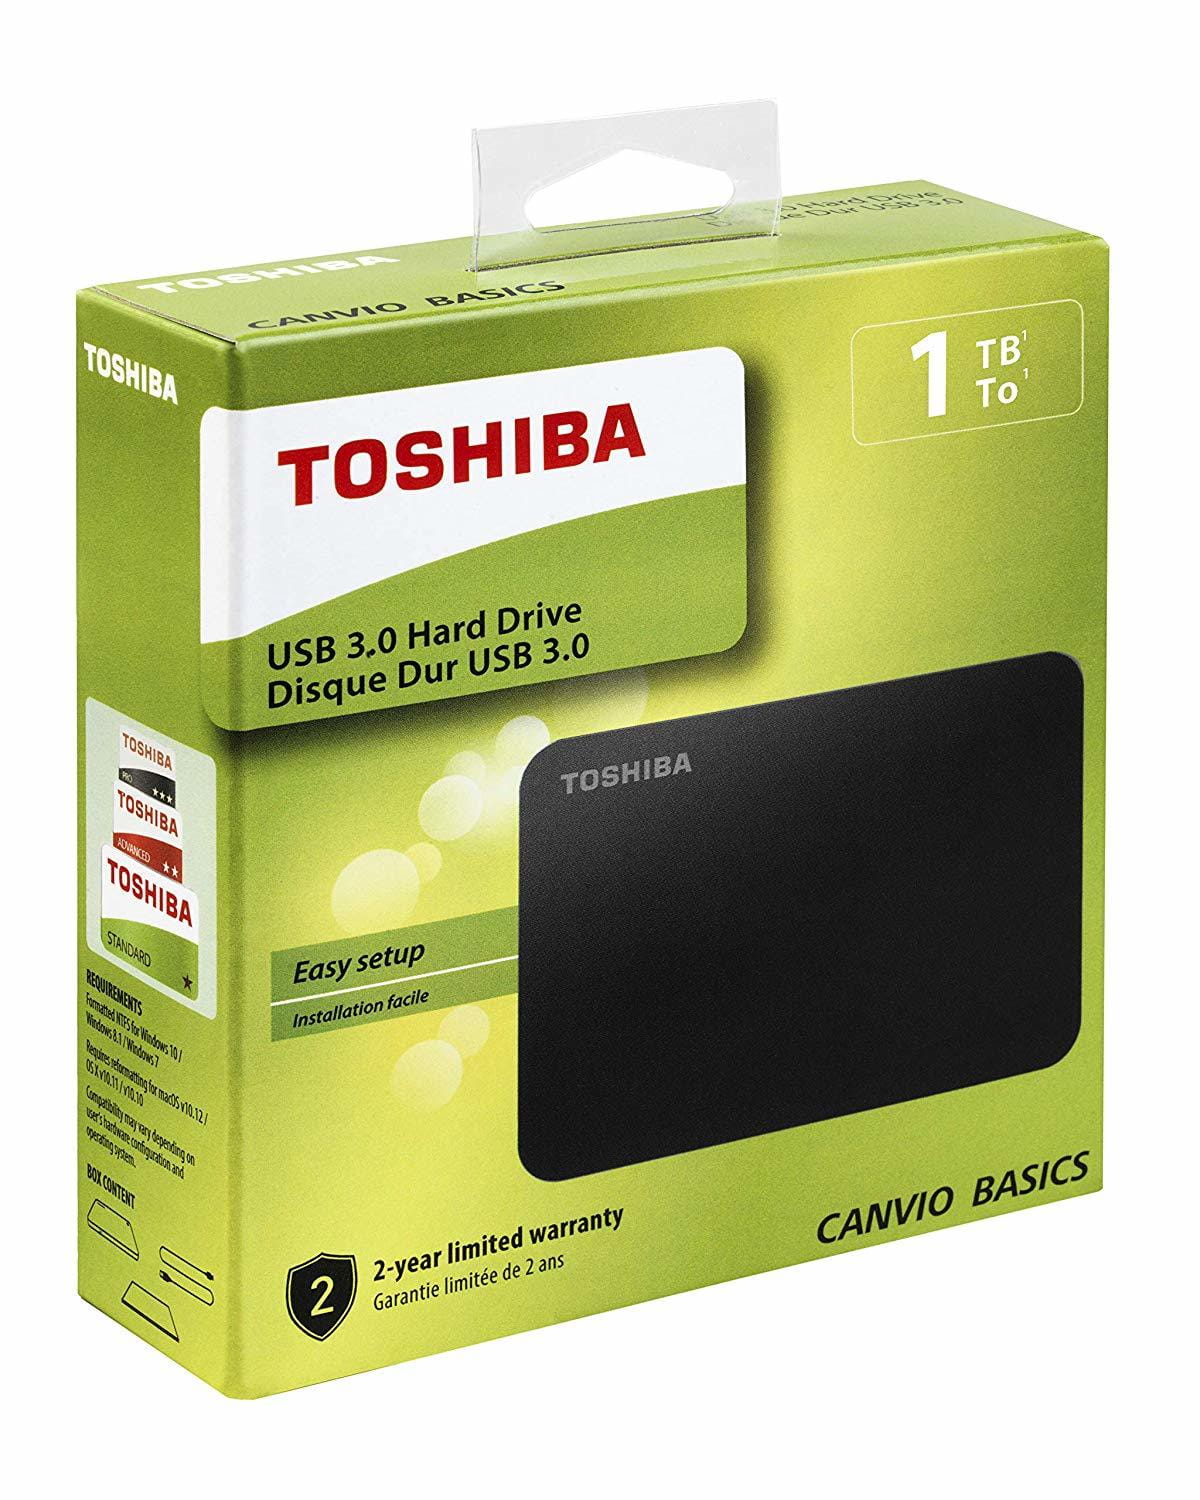 HDD Toshiba HDTB410EK3AA / 1.0TB / 2.5'' / External / Black